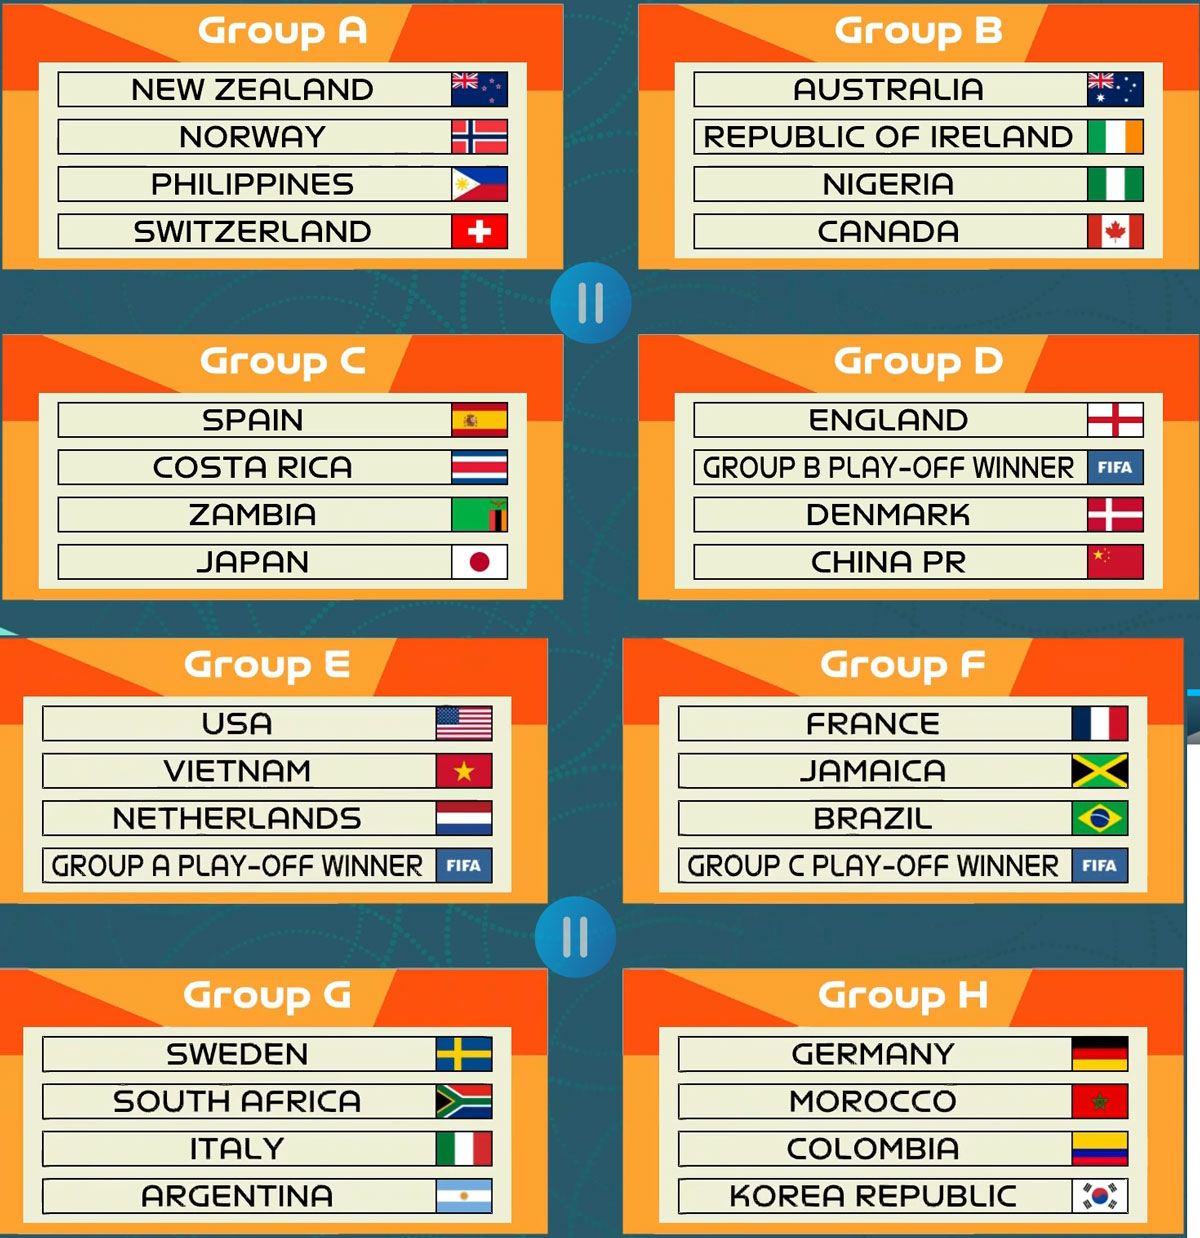 Lịch thi đấu vòng bảng World Cup nữ 2023